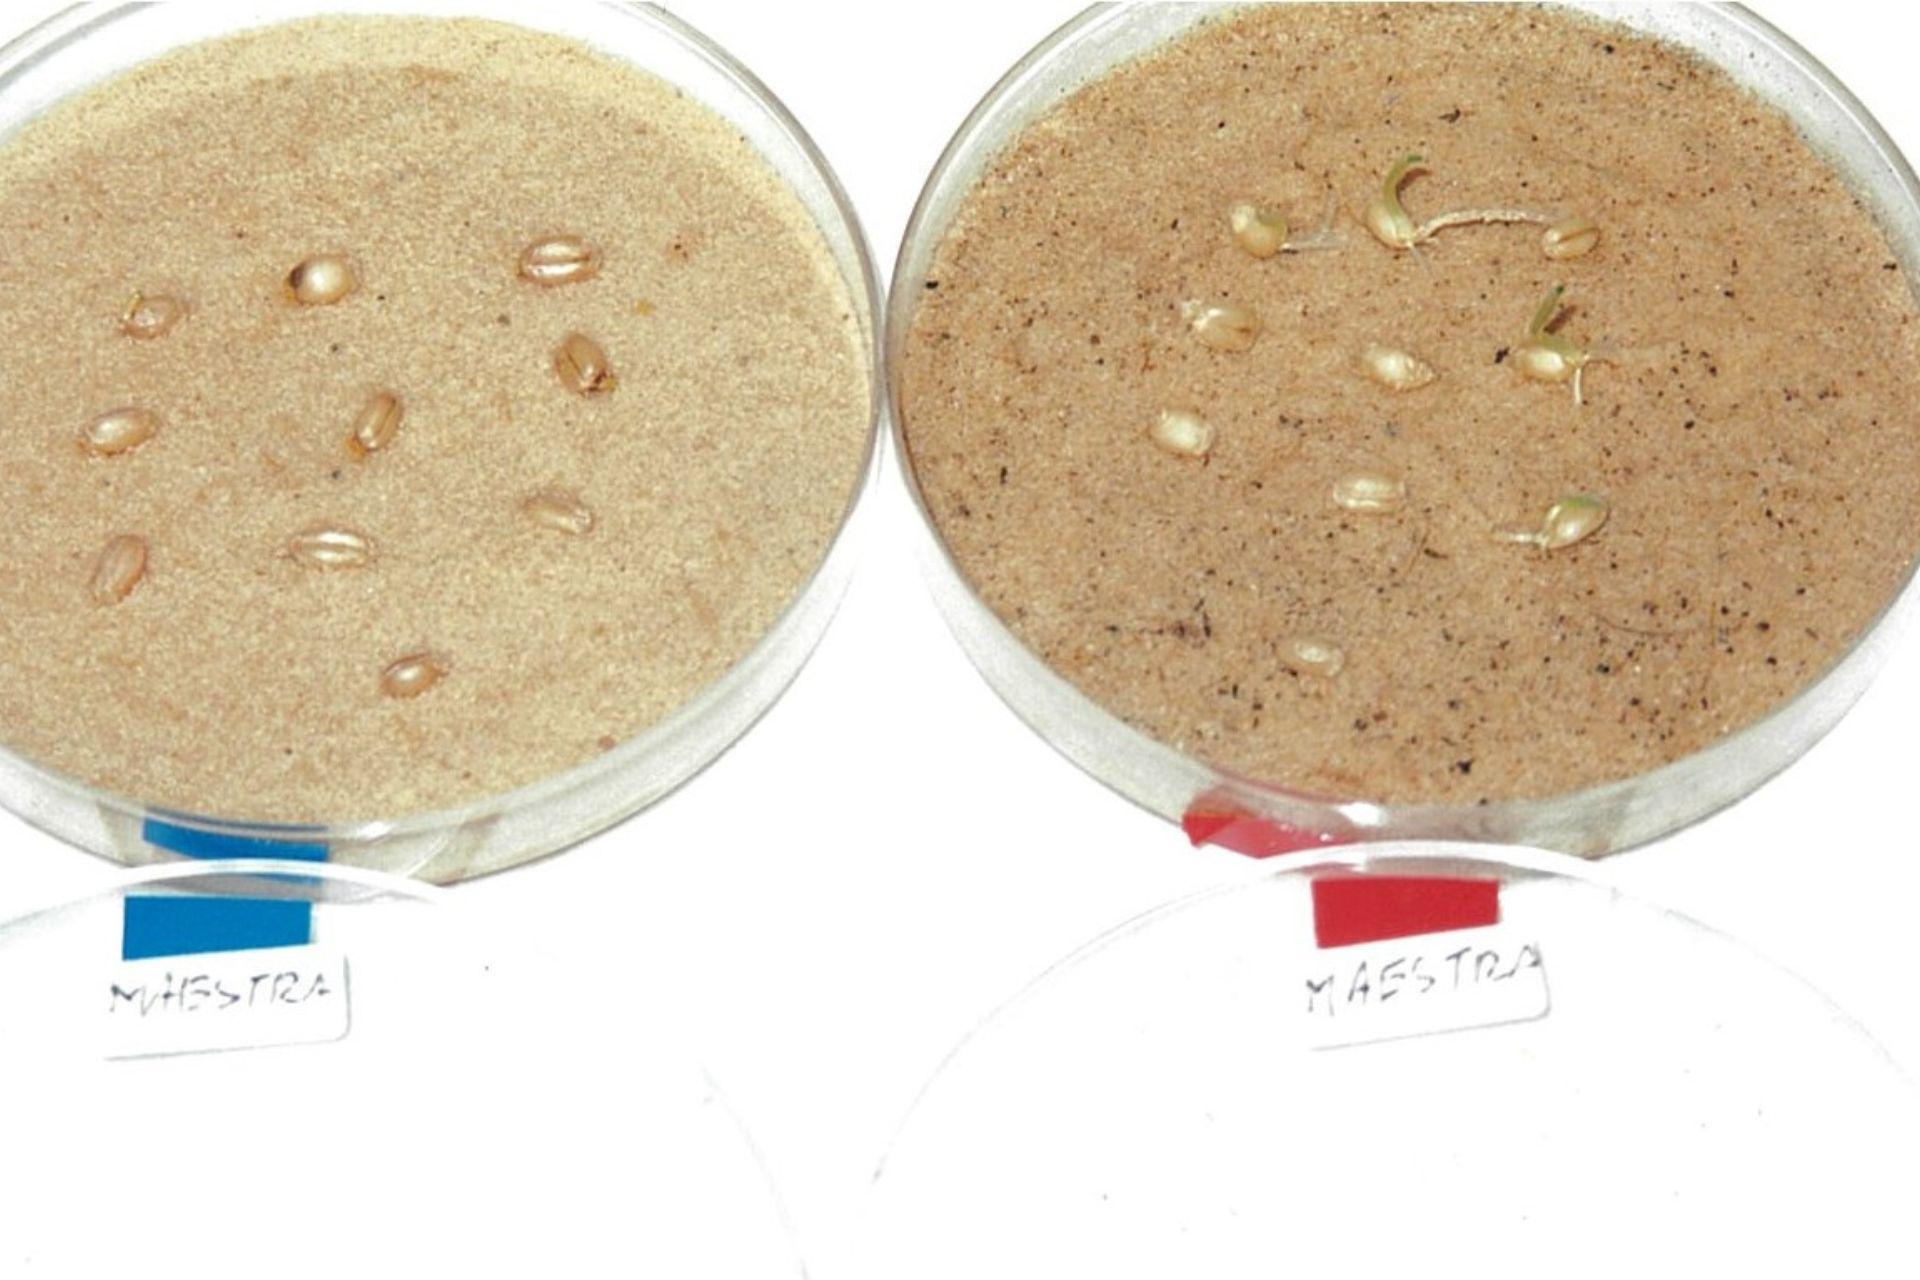 BioAksxter-test-di-germinazione-frumento-in-sabbia-desertica-2001.jpg